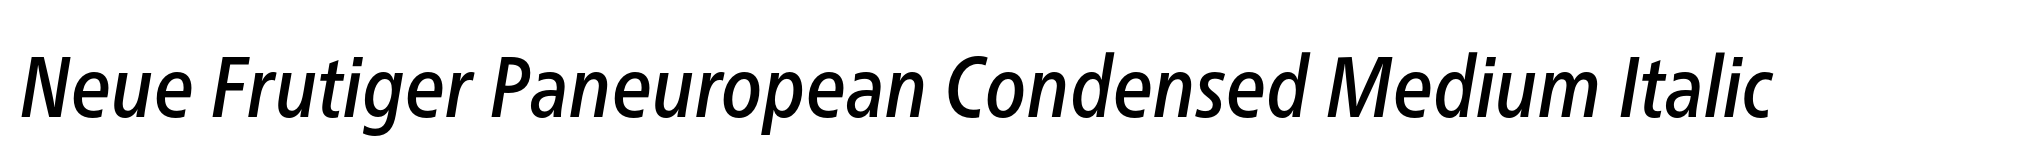 Neue Frutiger Paneuropean Condensed Medium Italic image